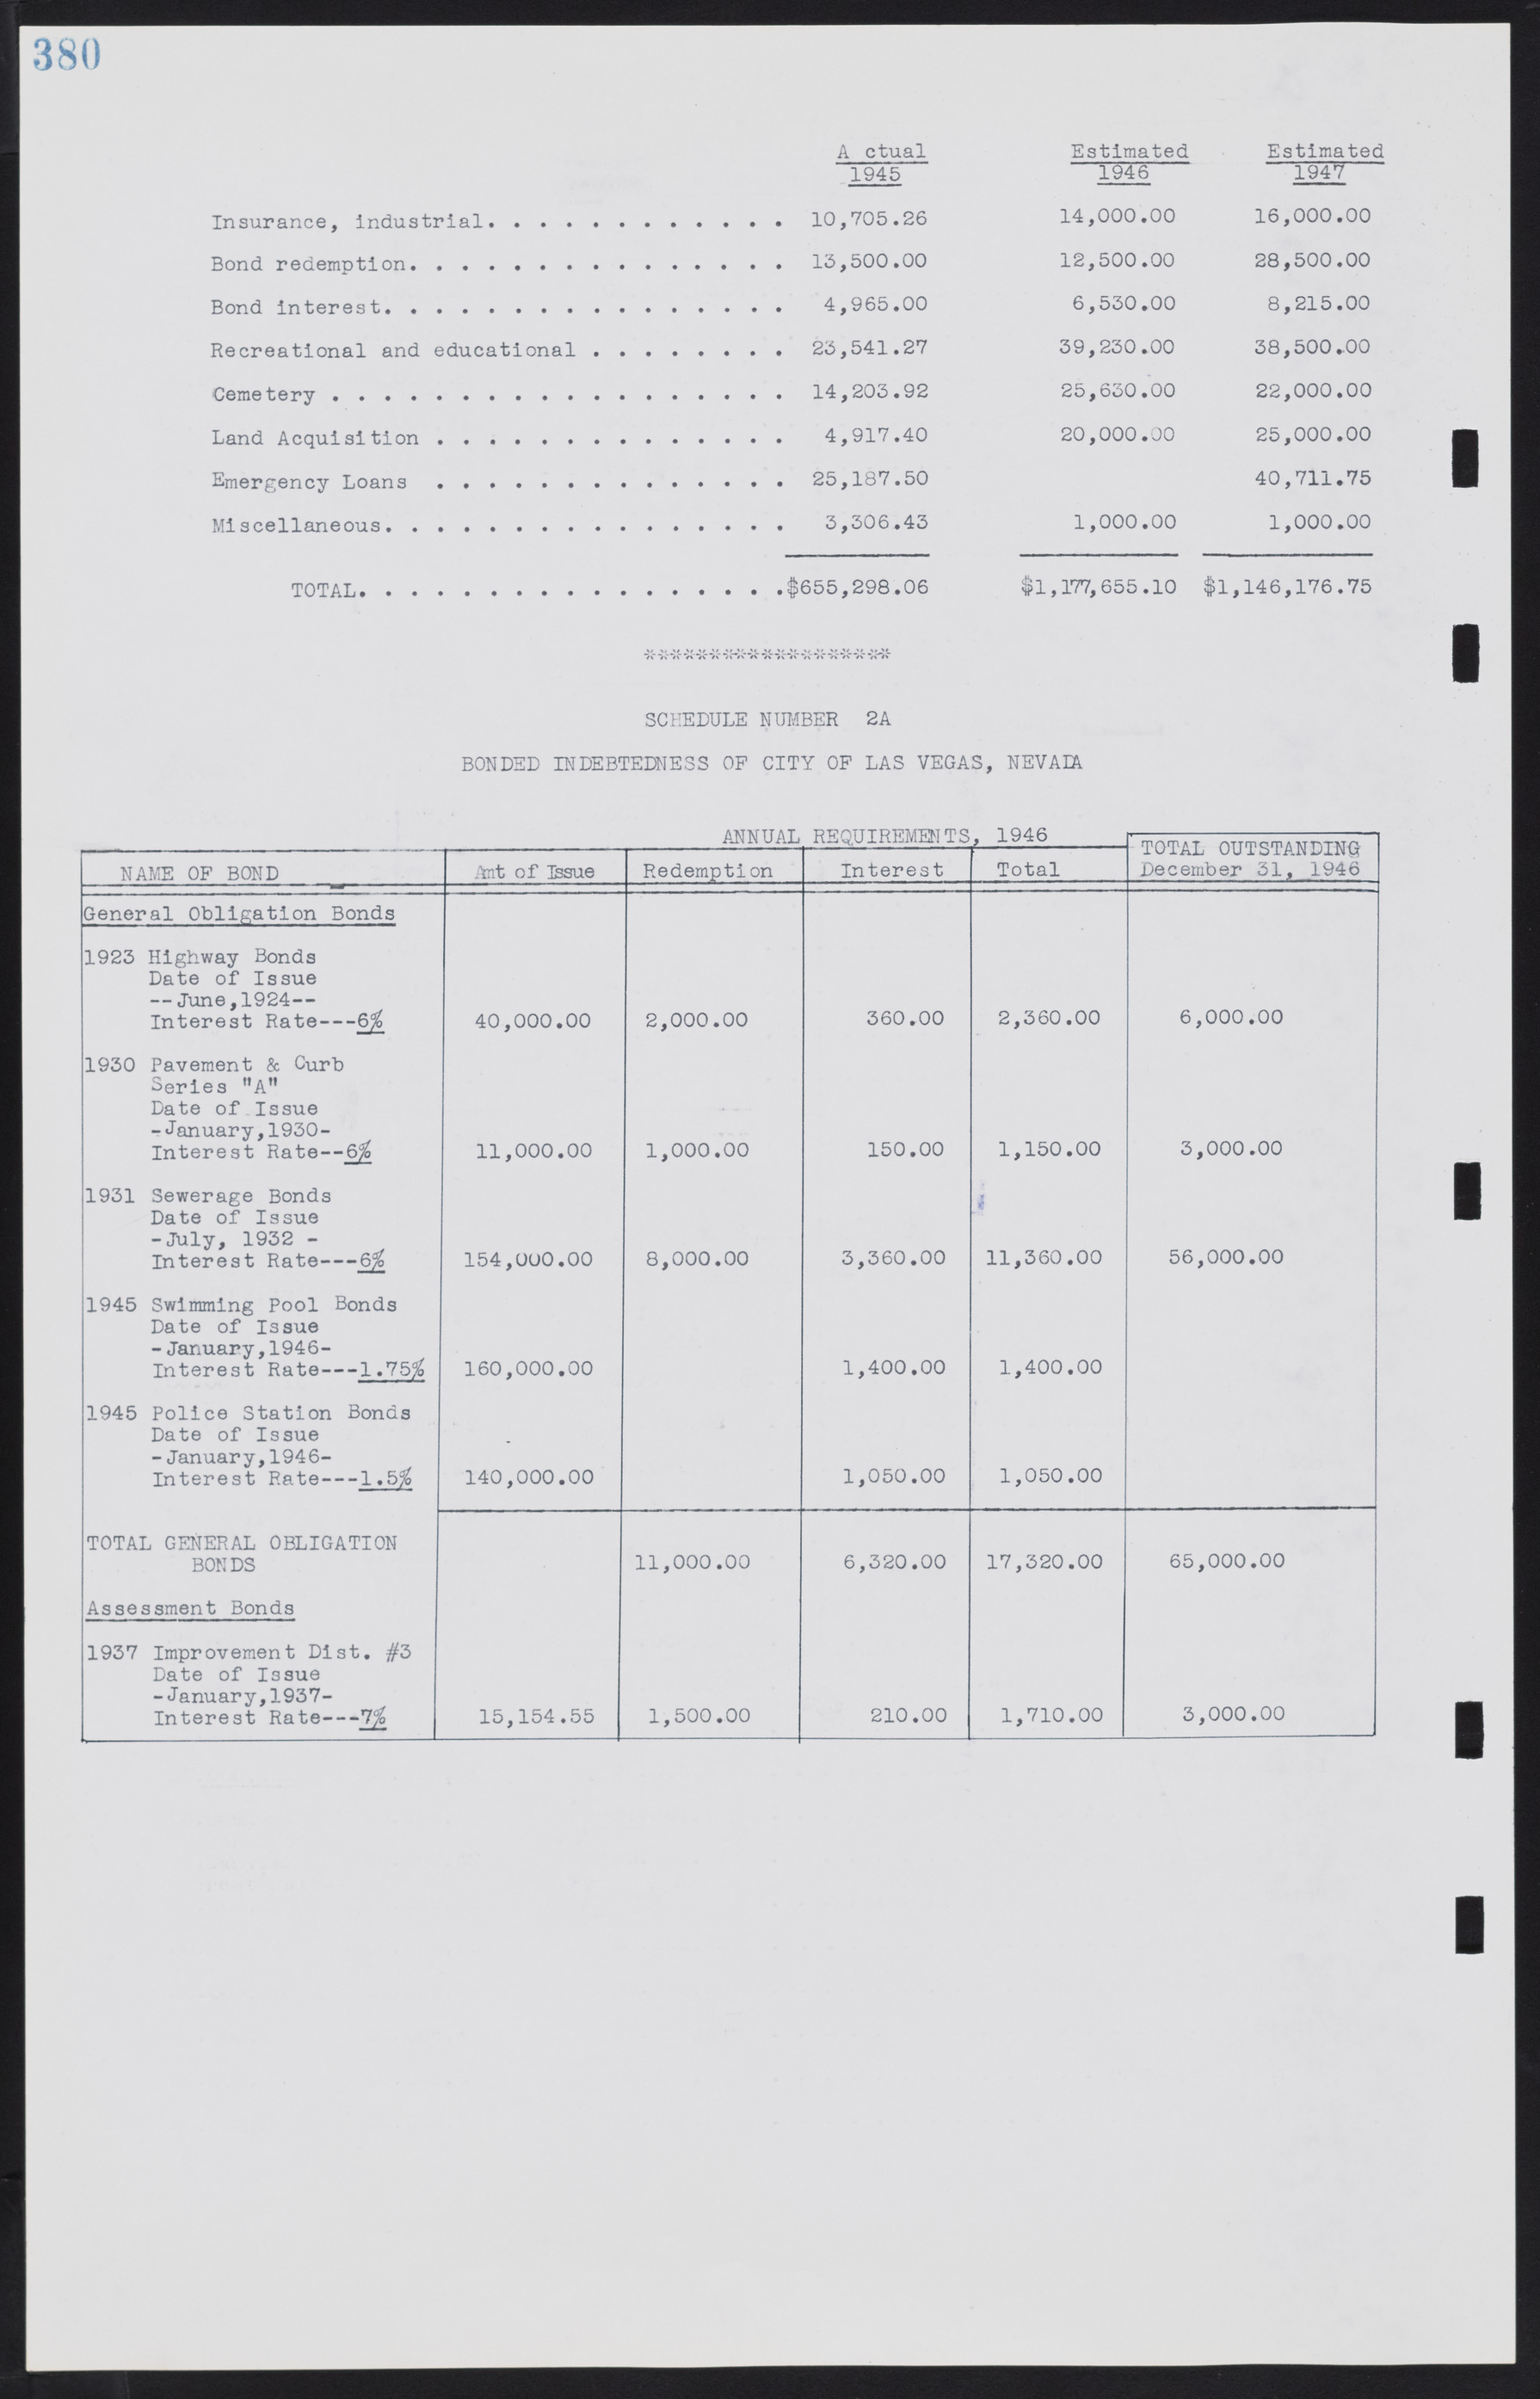 Las Vegas City Commission Minutes, August 11, 1942 to December 30, 1946, lvc000005-407